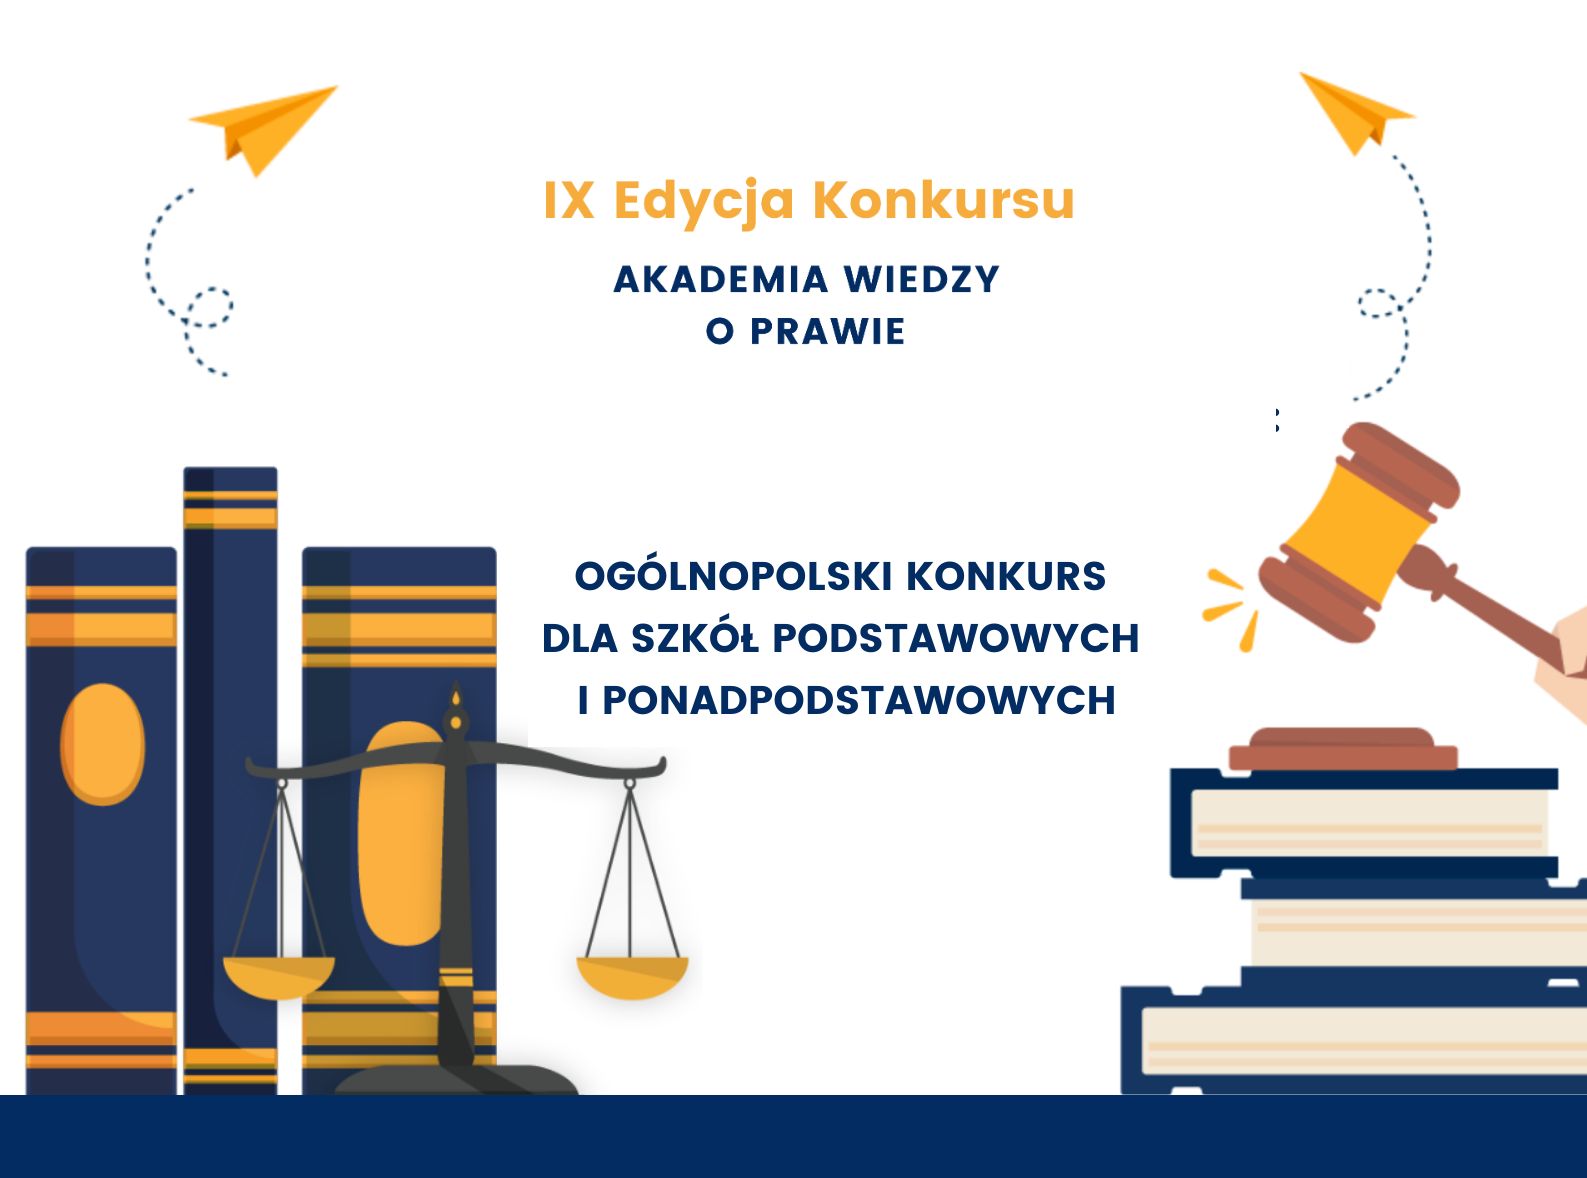 Waga szalkowa, młotek sędziowski i kodeksy na plakacie informacyjnym konkursu wiedzy o prawie.